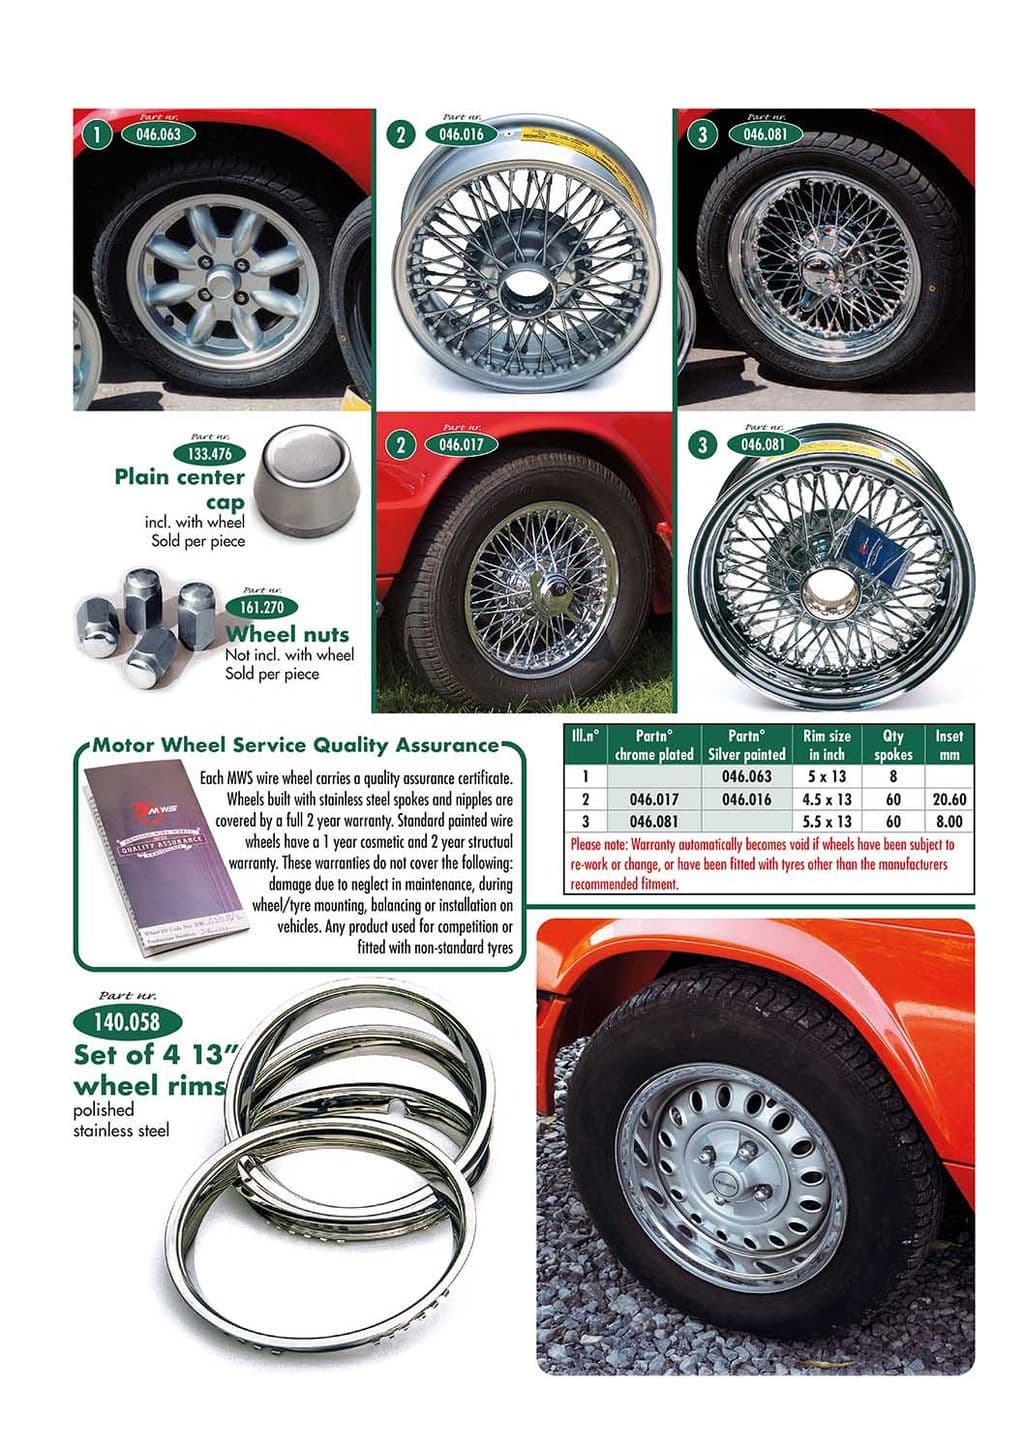 Wheels & accessories - accesorios estéticos exteriores - Accesorios y preparación - Triumph GT6 MKI-III 1966-1973 - Wheels & accessories - 1